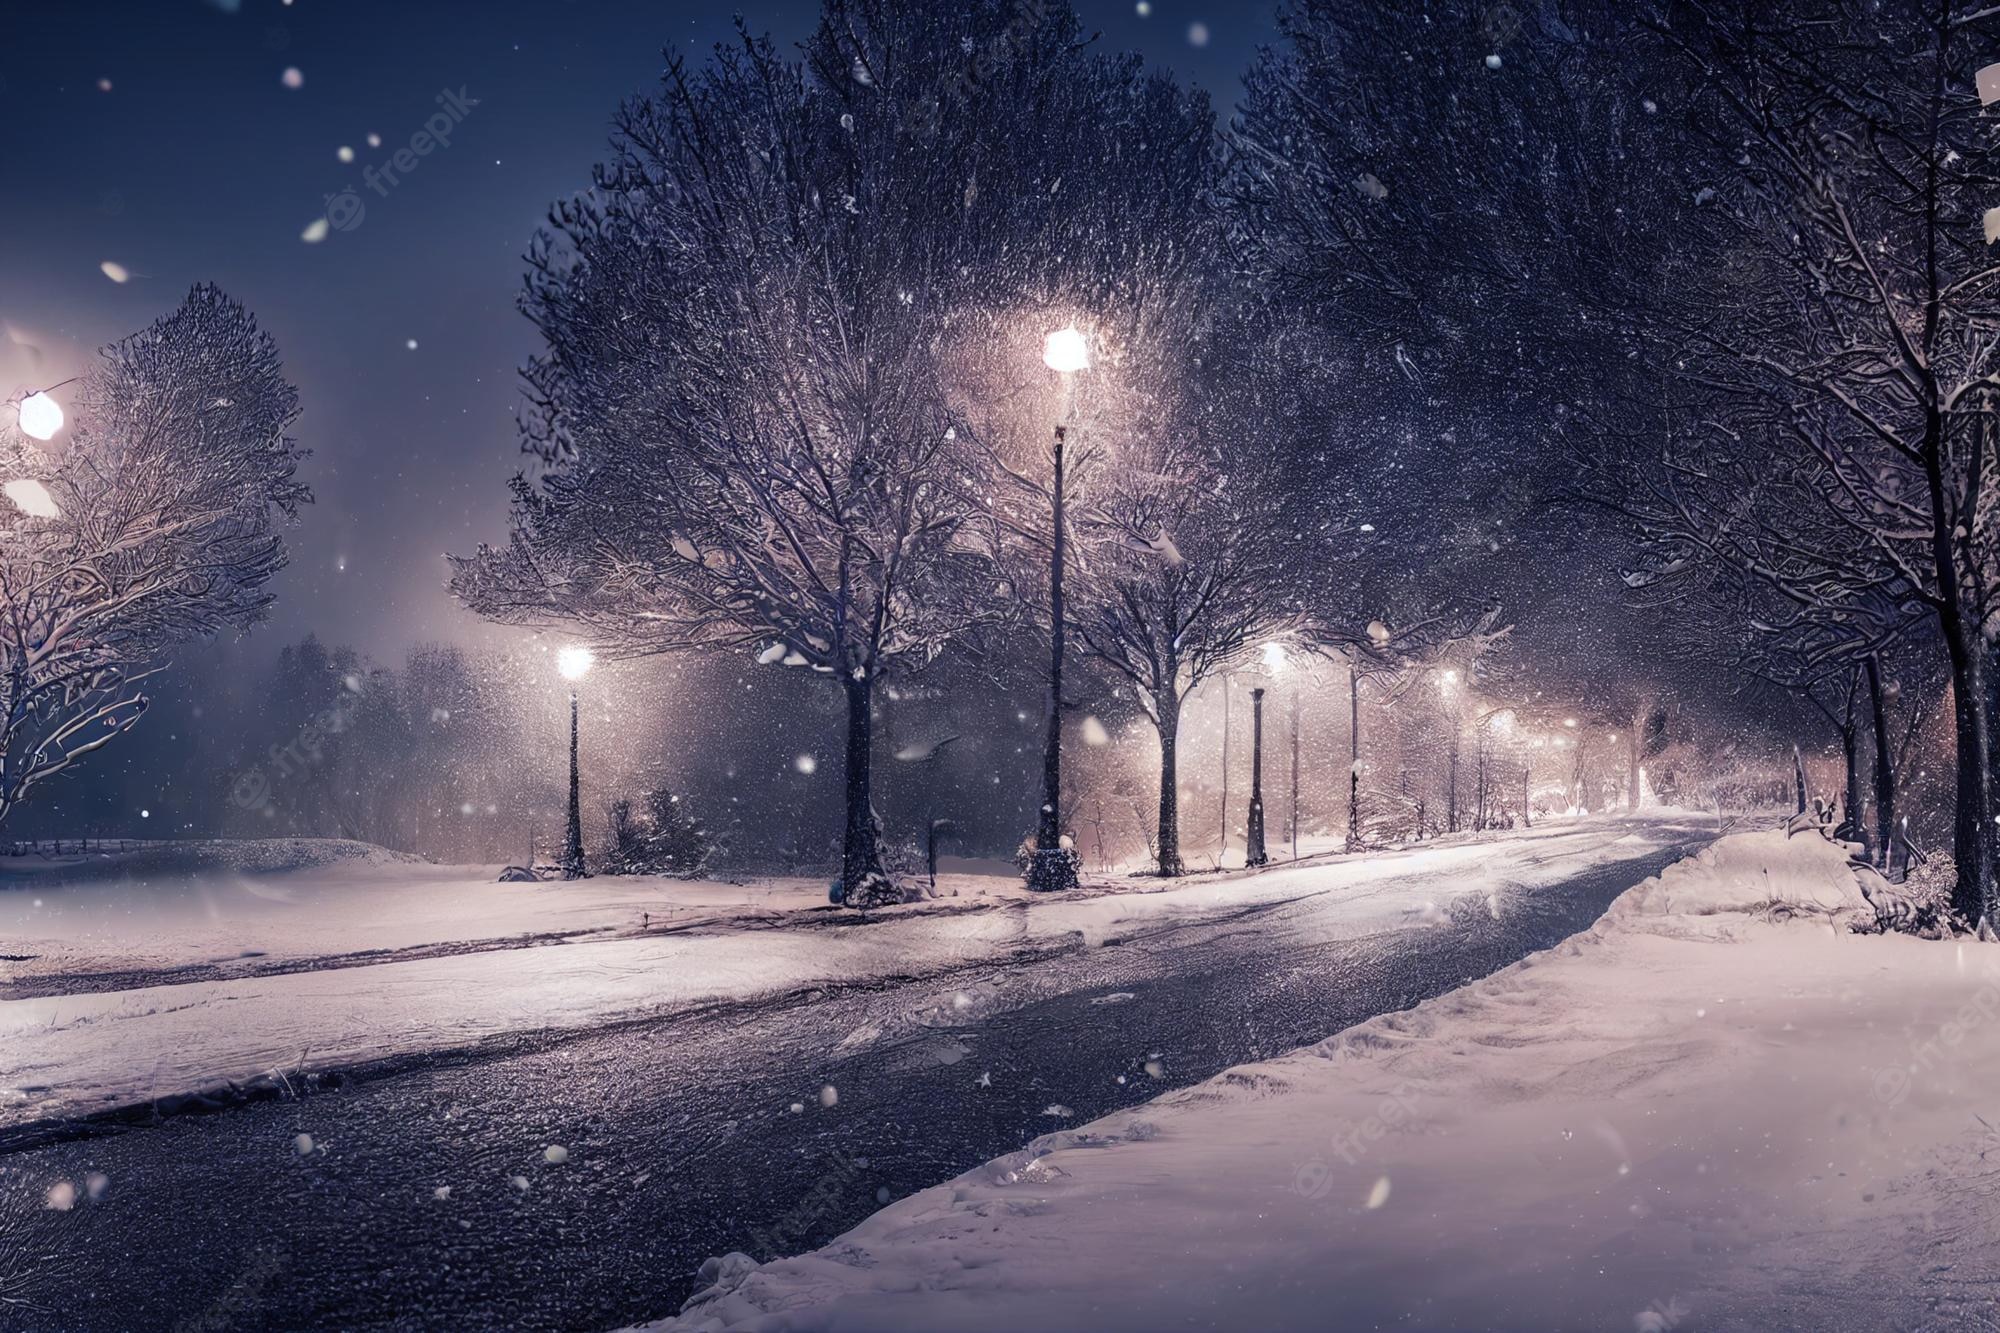 Snowy Night Image